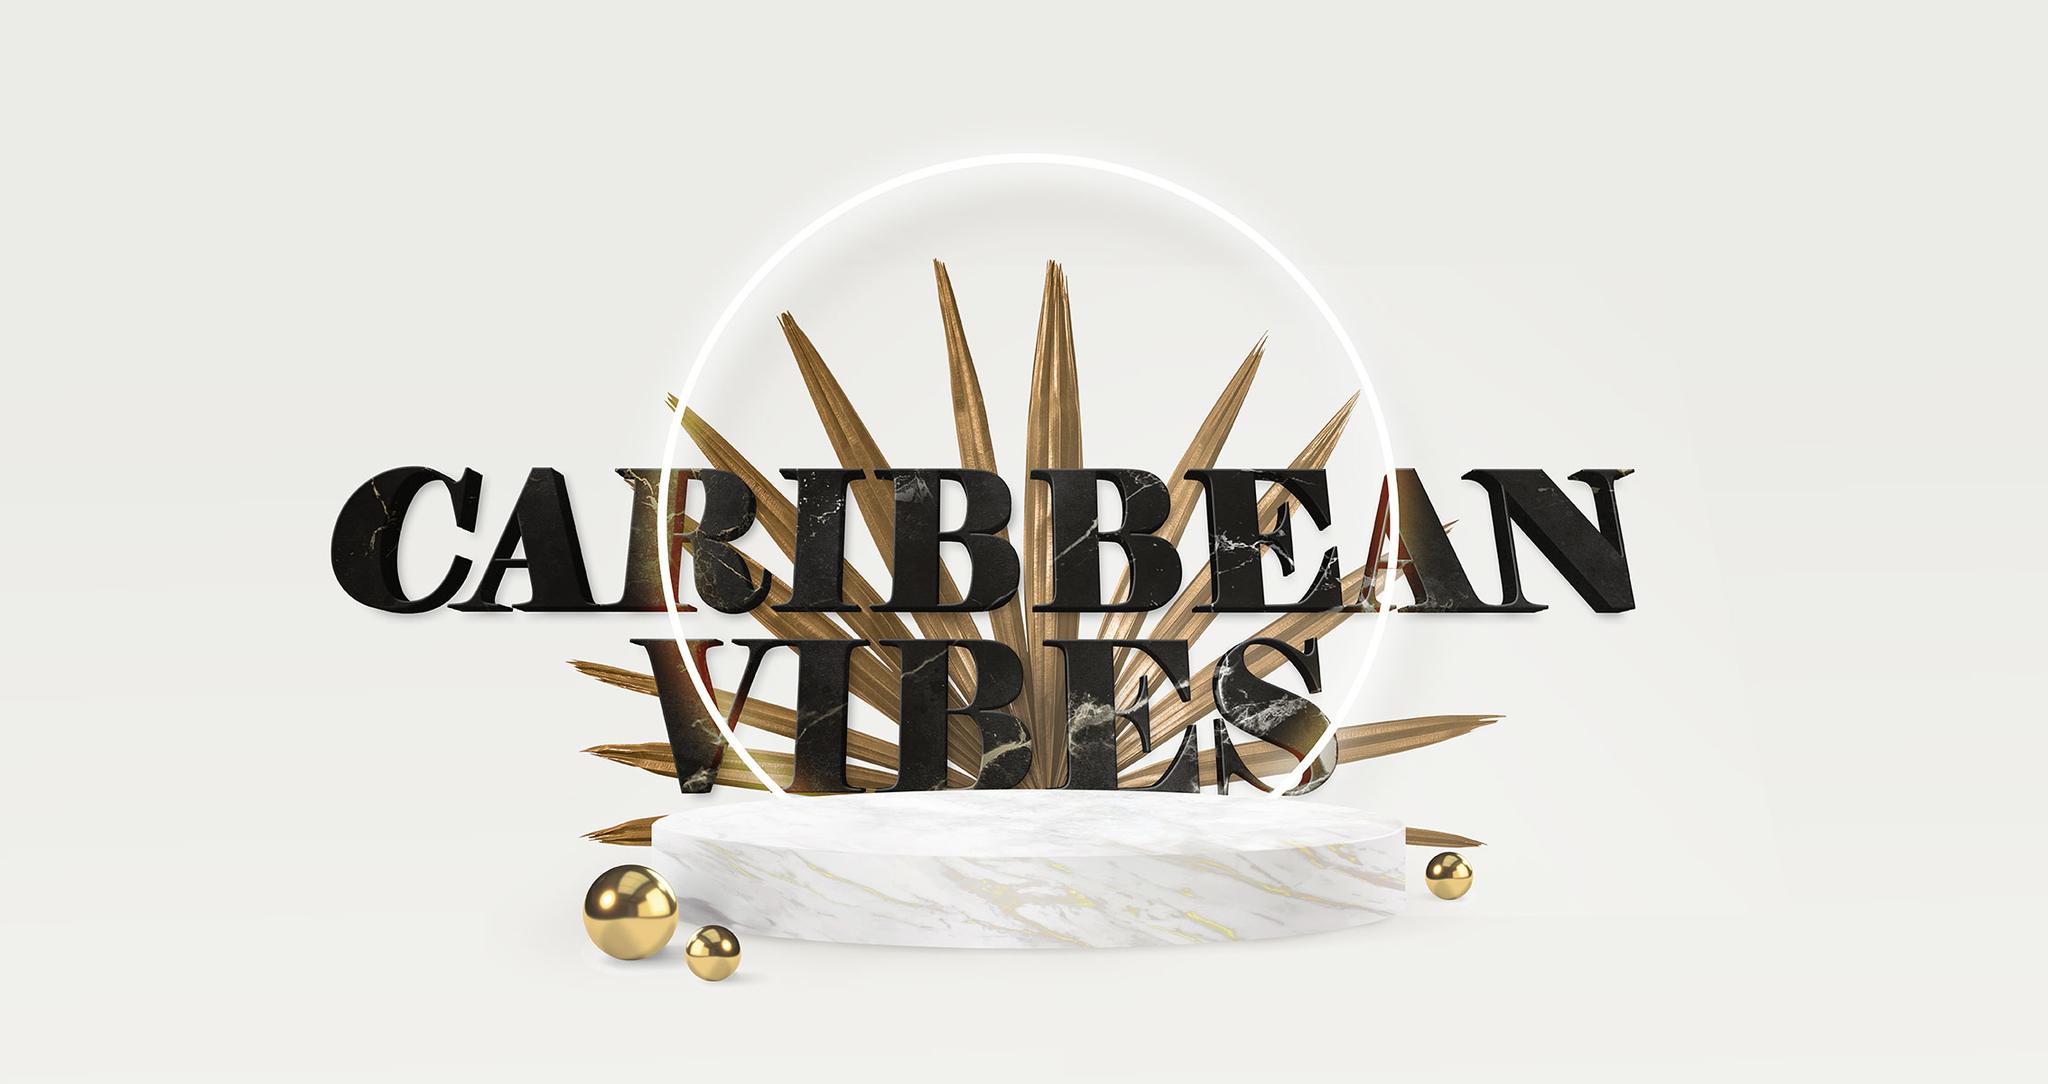 Caribbean Vibes at Badehaus